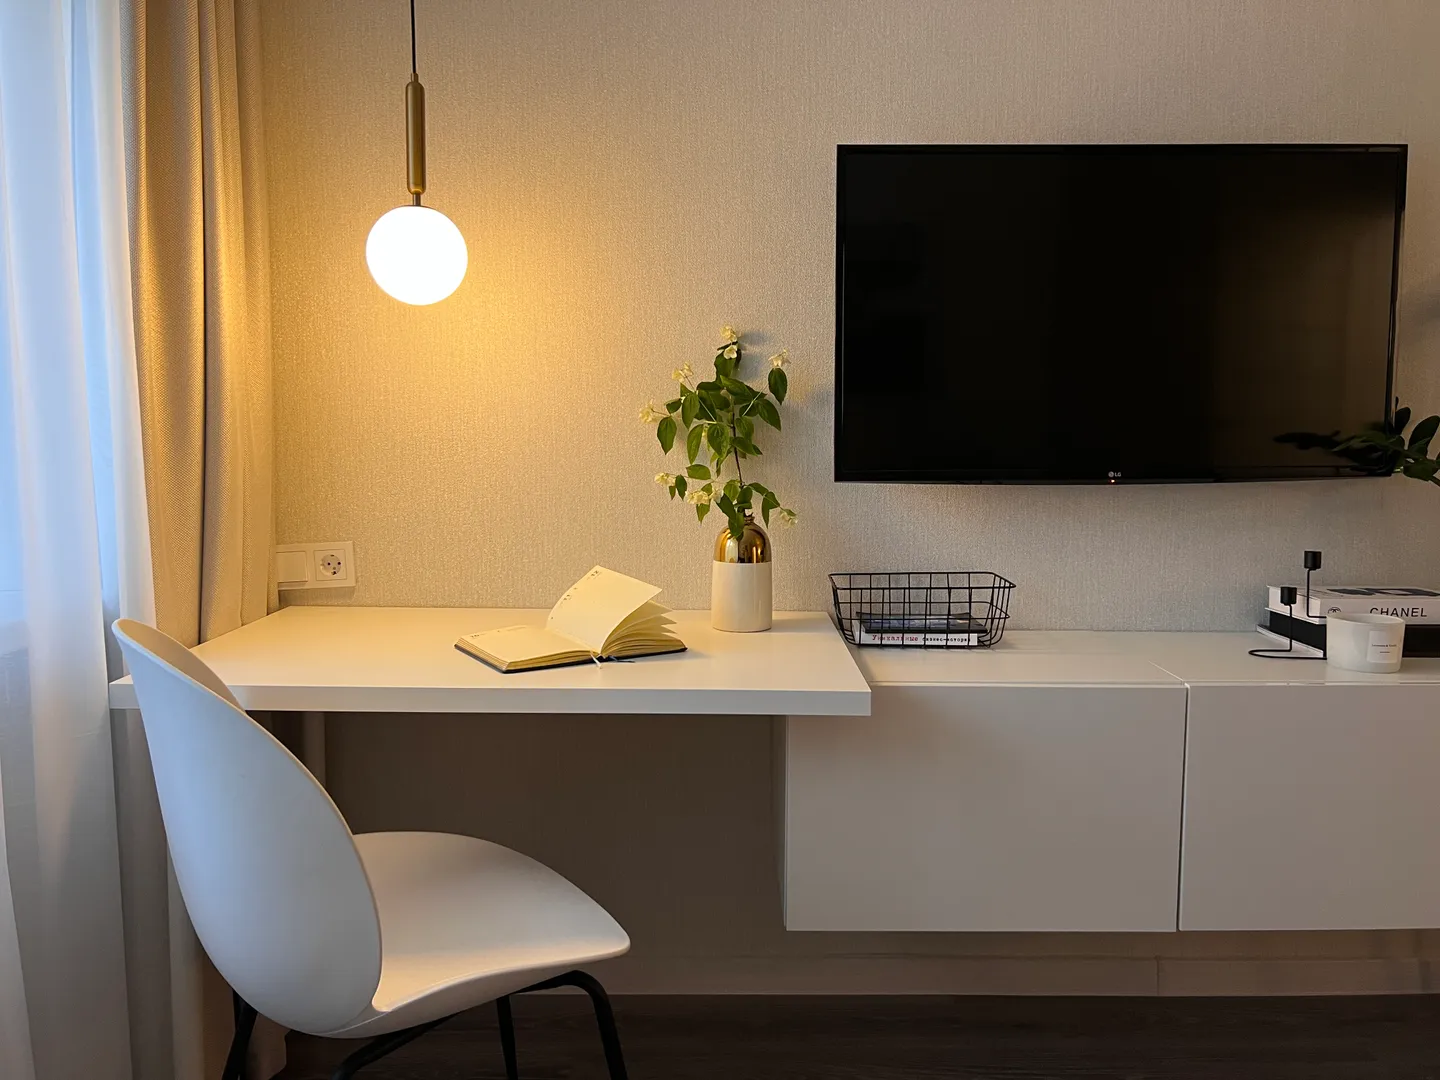 В квартире продуманы разные сценарии освещения, которые можно подстроить под ваши желания и потребности